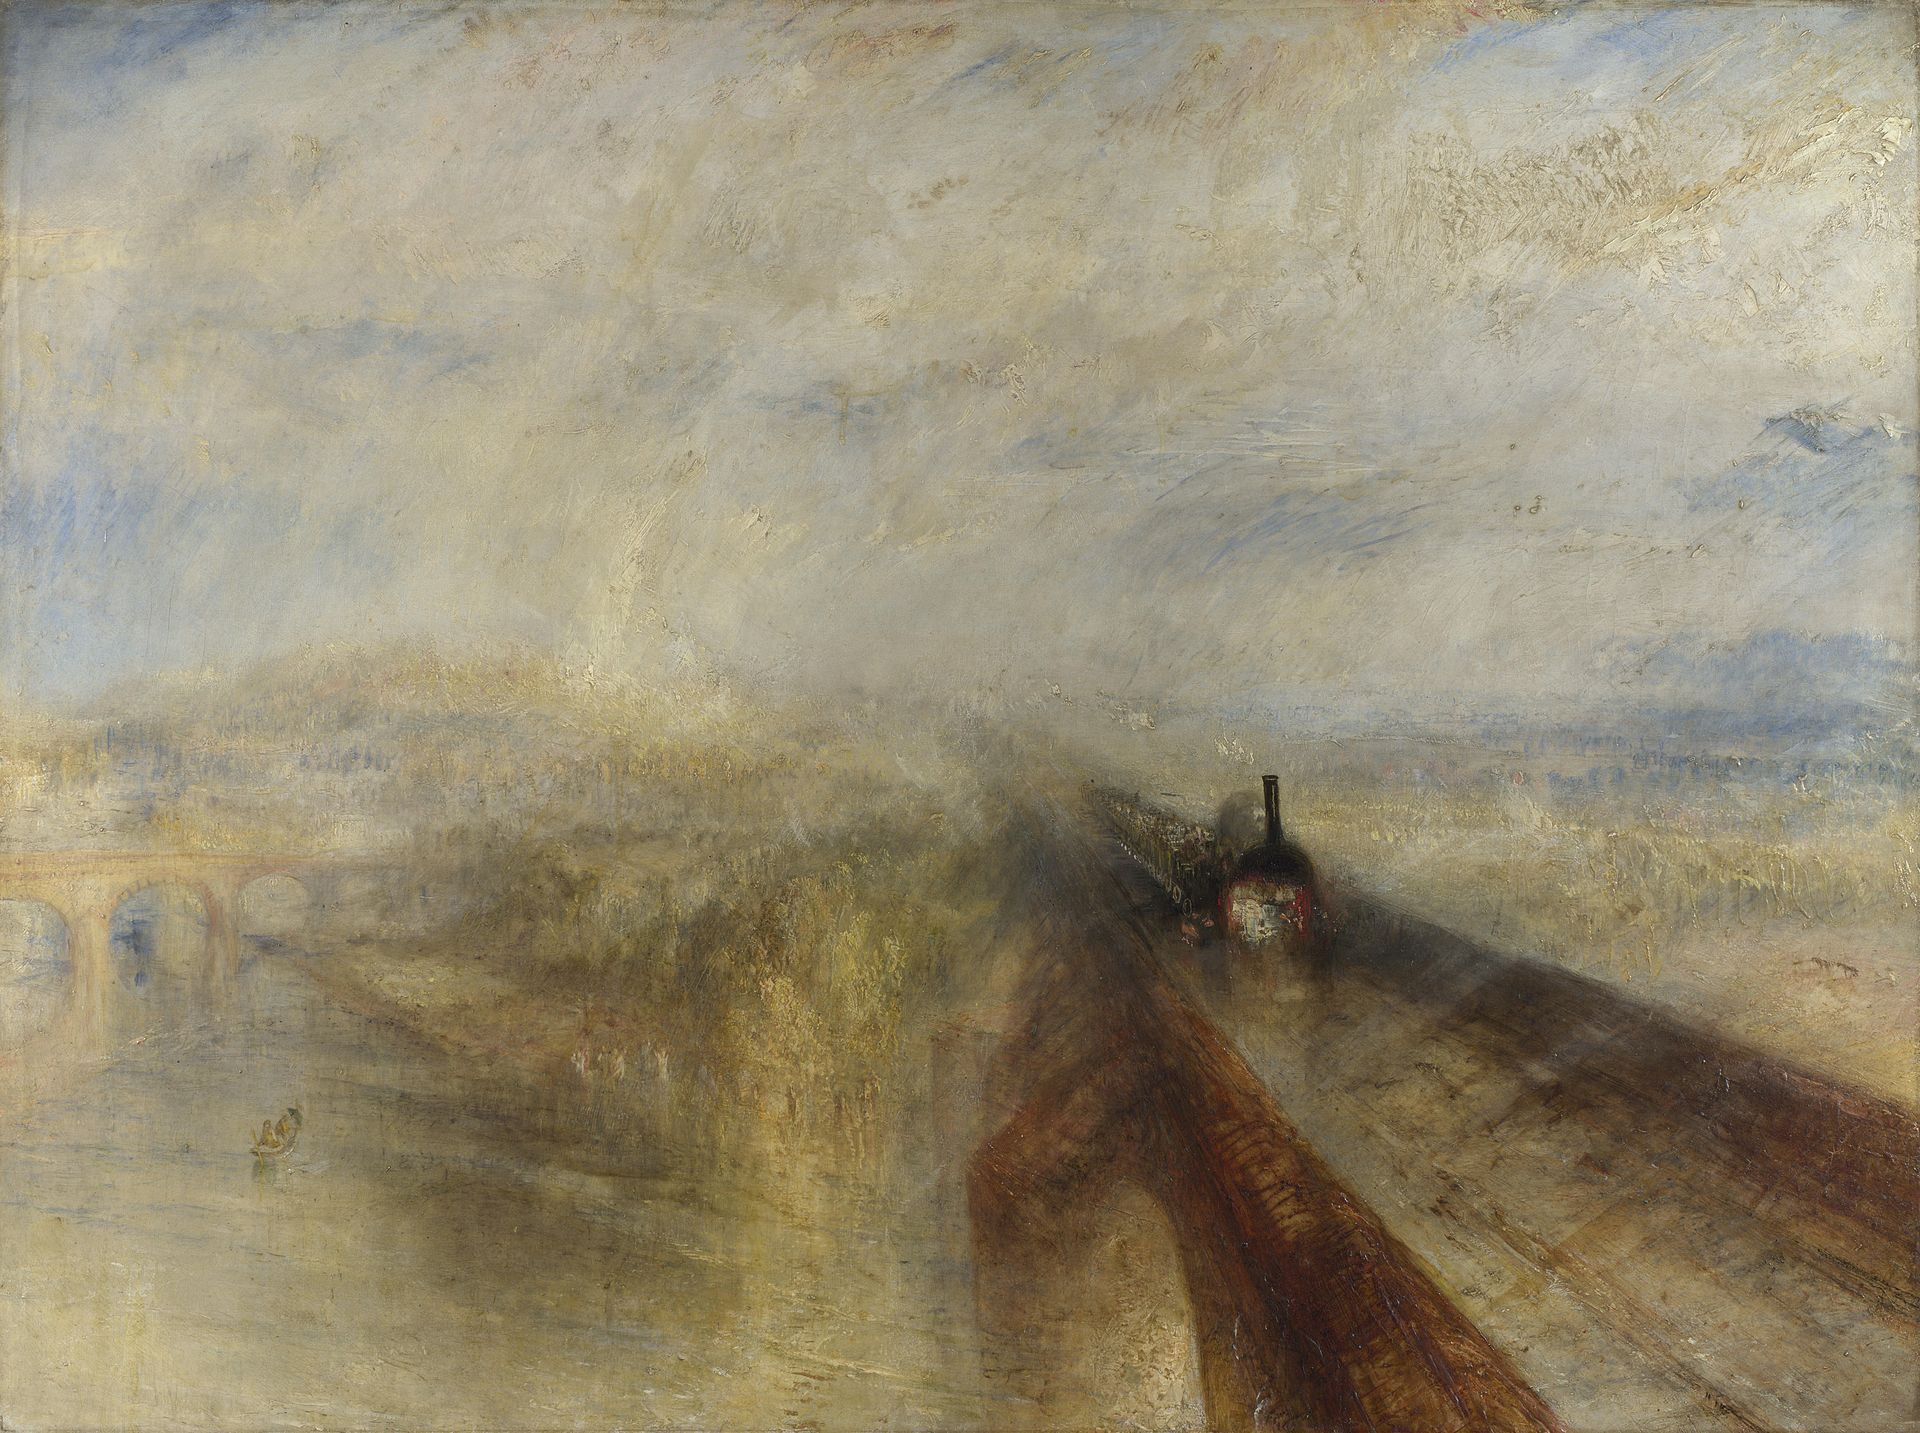 Дощ, пара і швидкість – Велика західна залізниця  by Joseph Mallord William Turner - 1844 - 91 x 121.8 см 